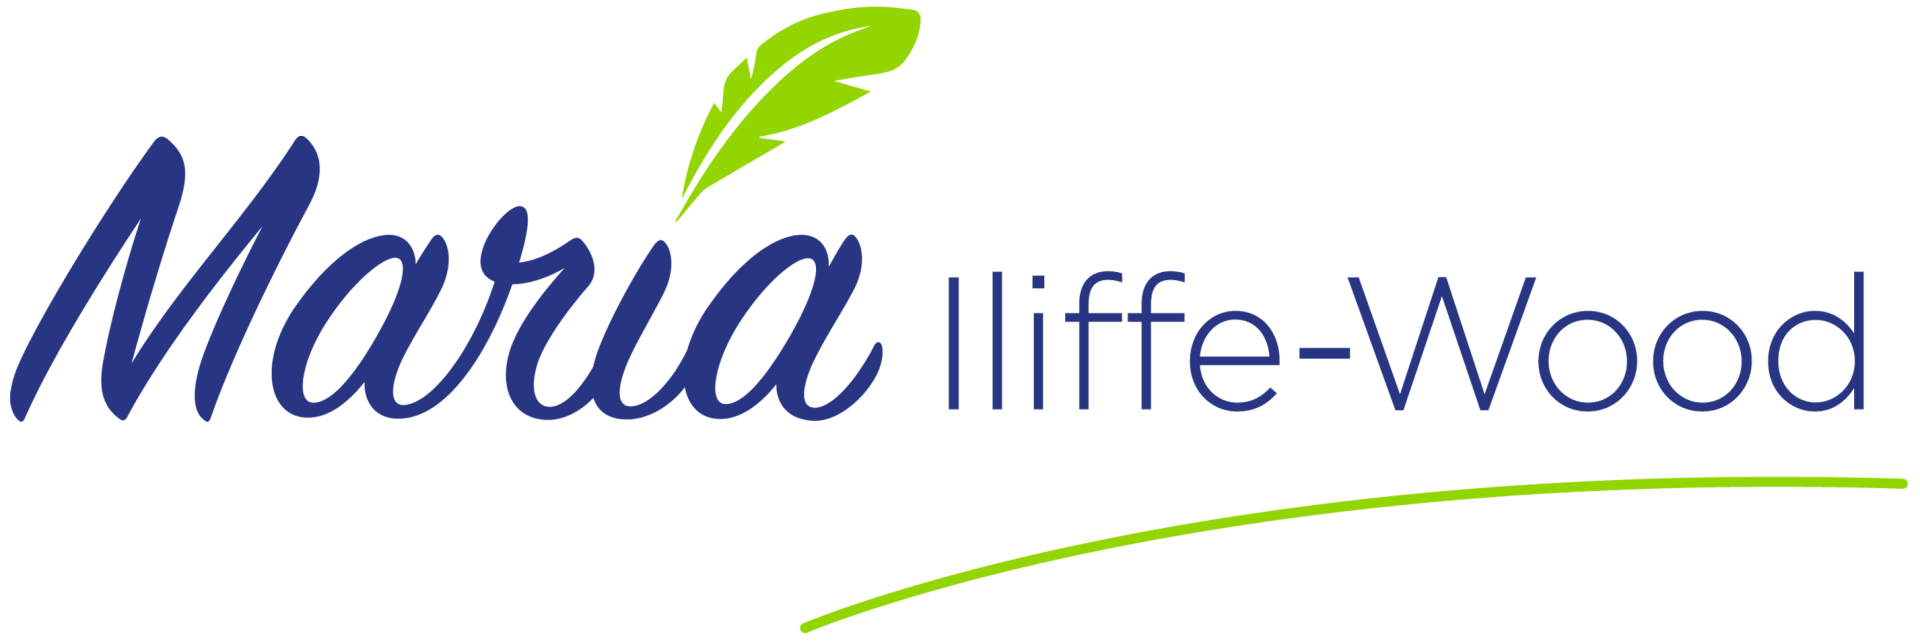 Maria Iliffe-Wood logo